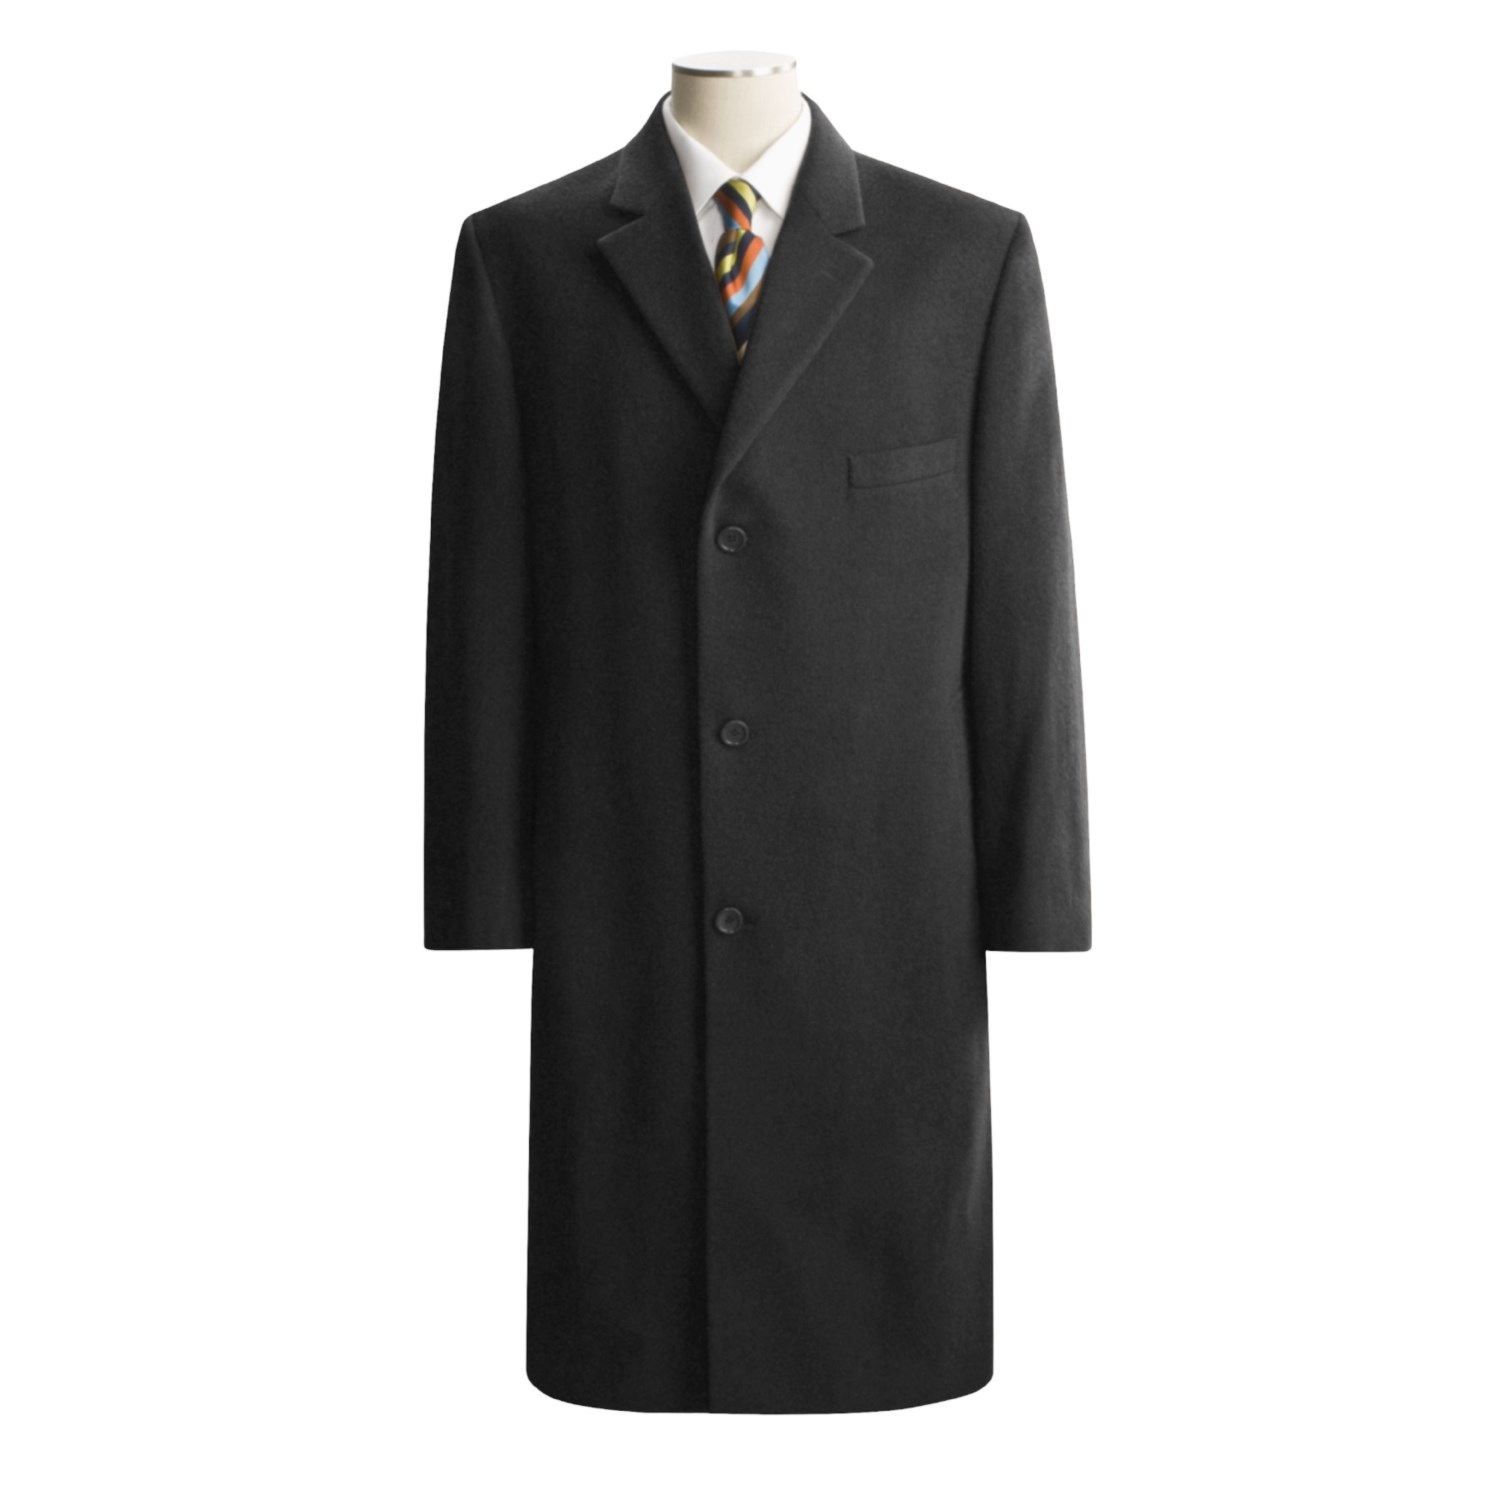 Lauren by Ralph Lauren Full-Length Top Coat (For Men)